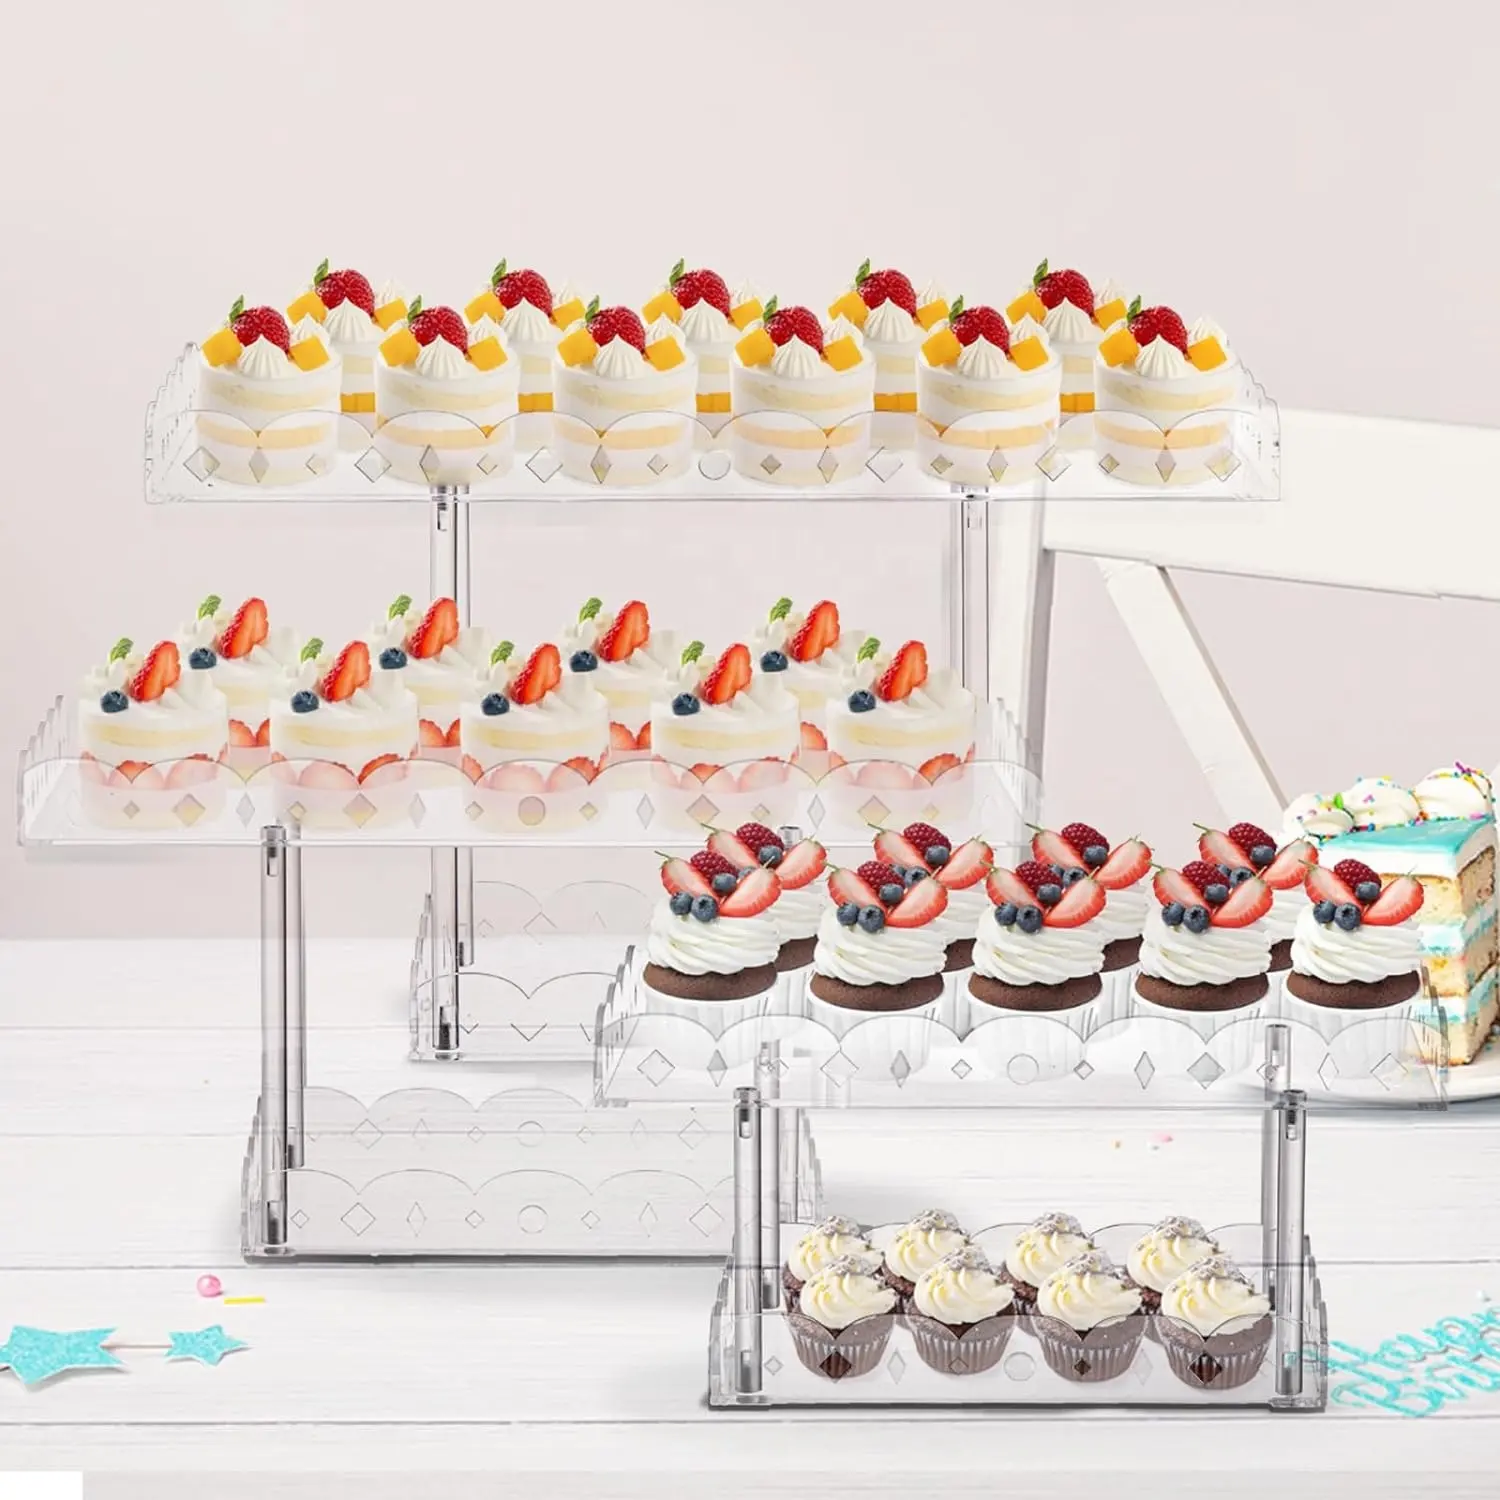 Suporte acrílico transparente para cupcake, conjunto com 3 unidades de suporte para buffet e mesa de sobremesas, ideal para festas de casamento, aniversário e chá de bebê